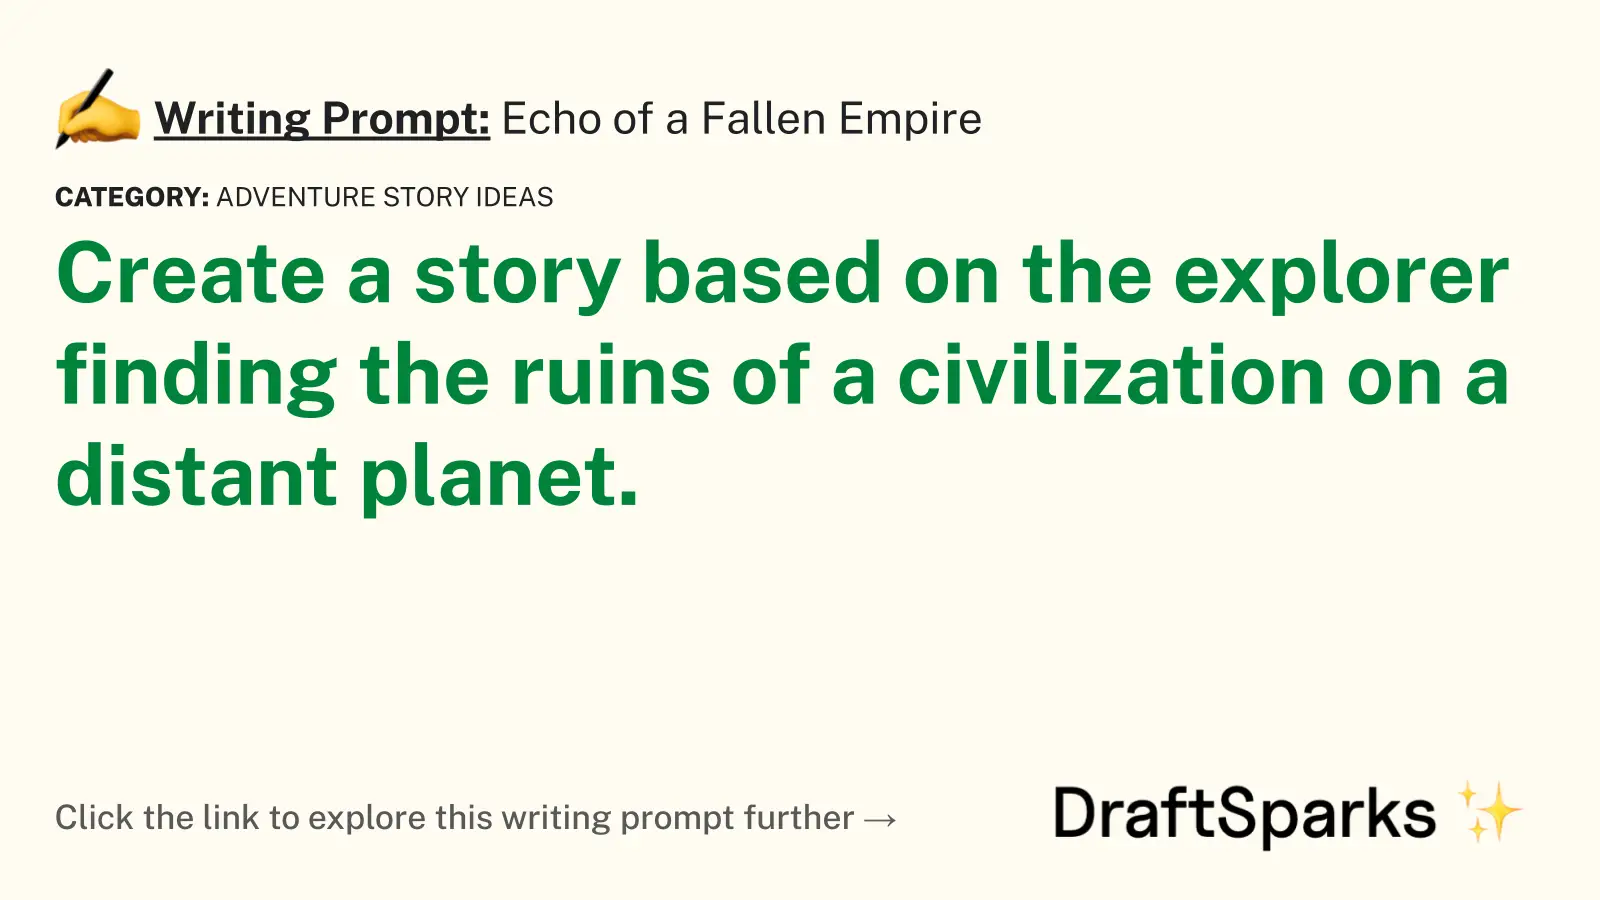 Echo of a Fallen Empire